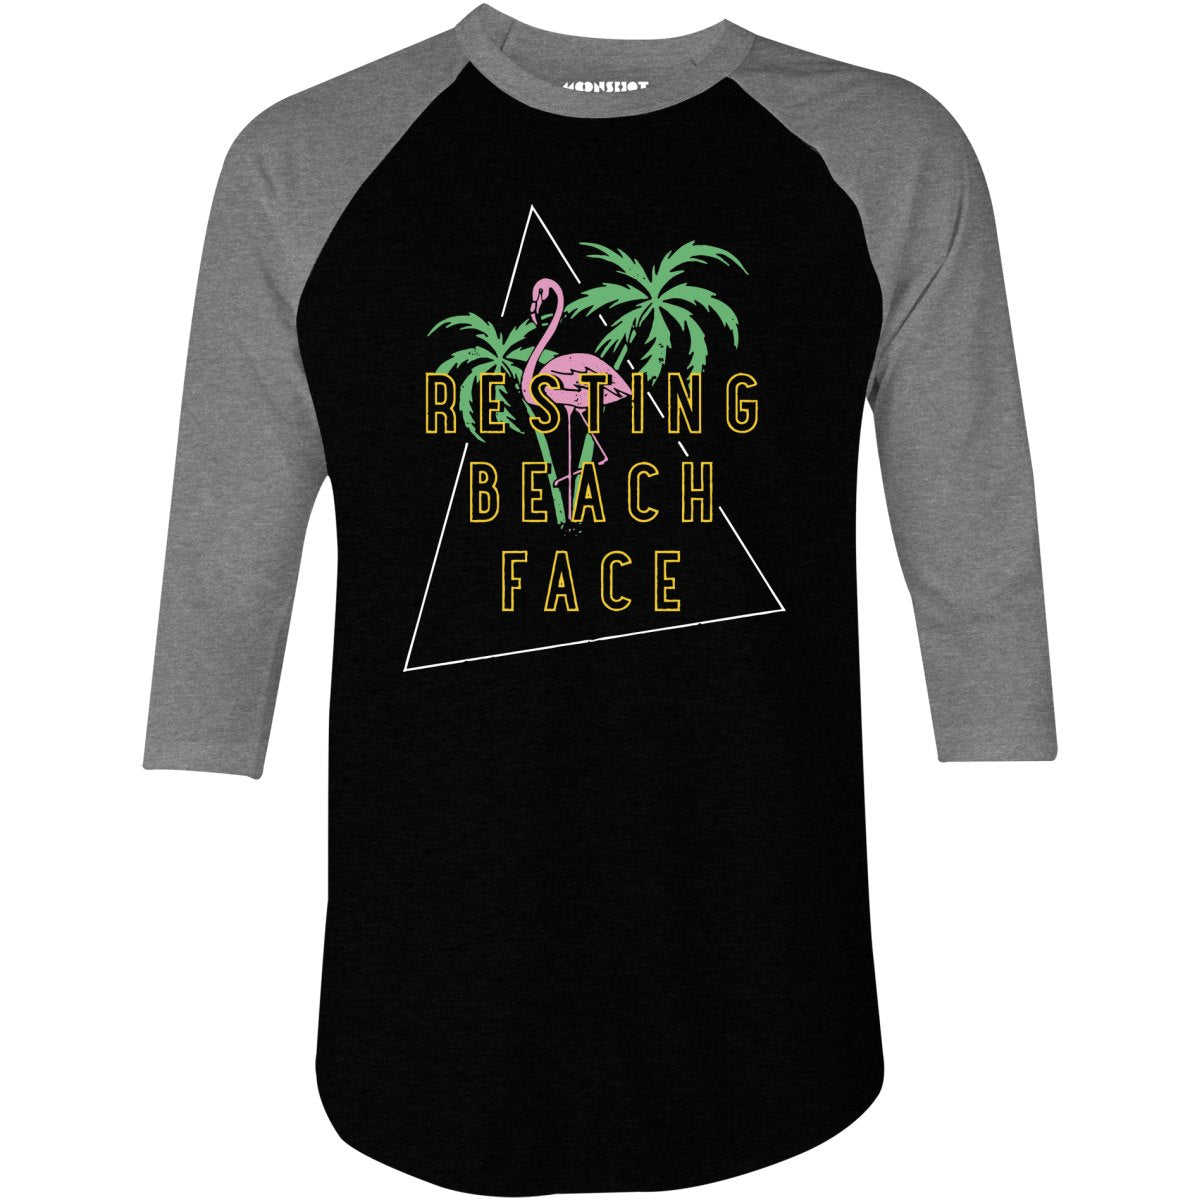 Resting Beach Face - 3/4 Sleeve Raglan T-Shirt